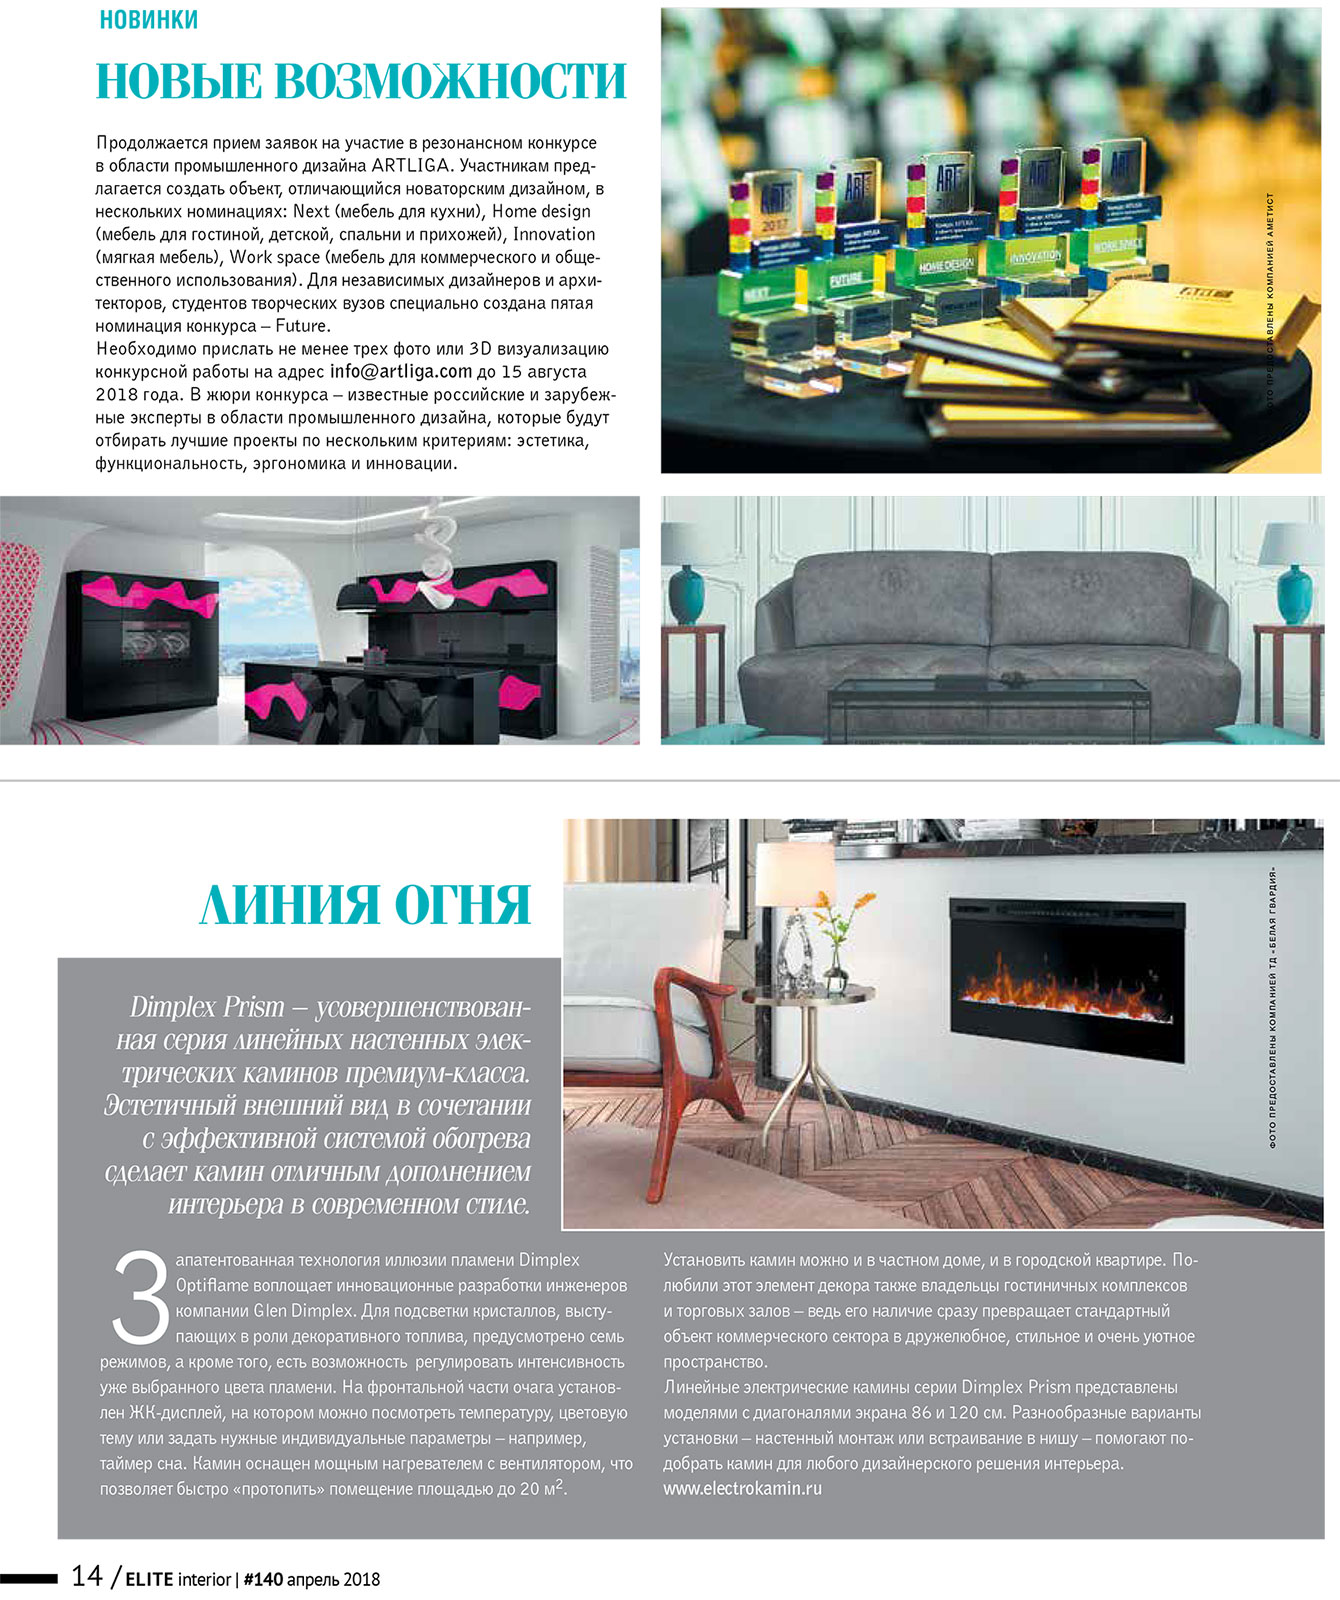 Электрический камин в журнале «ELITE interior» №140, апрель 2018